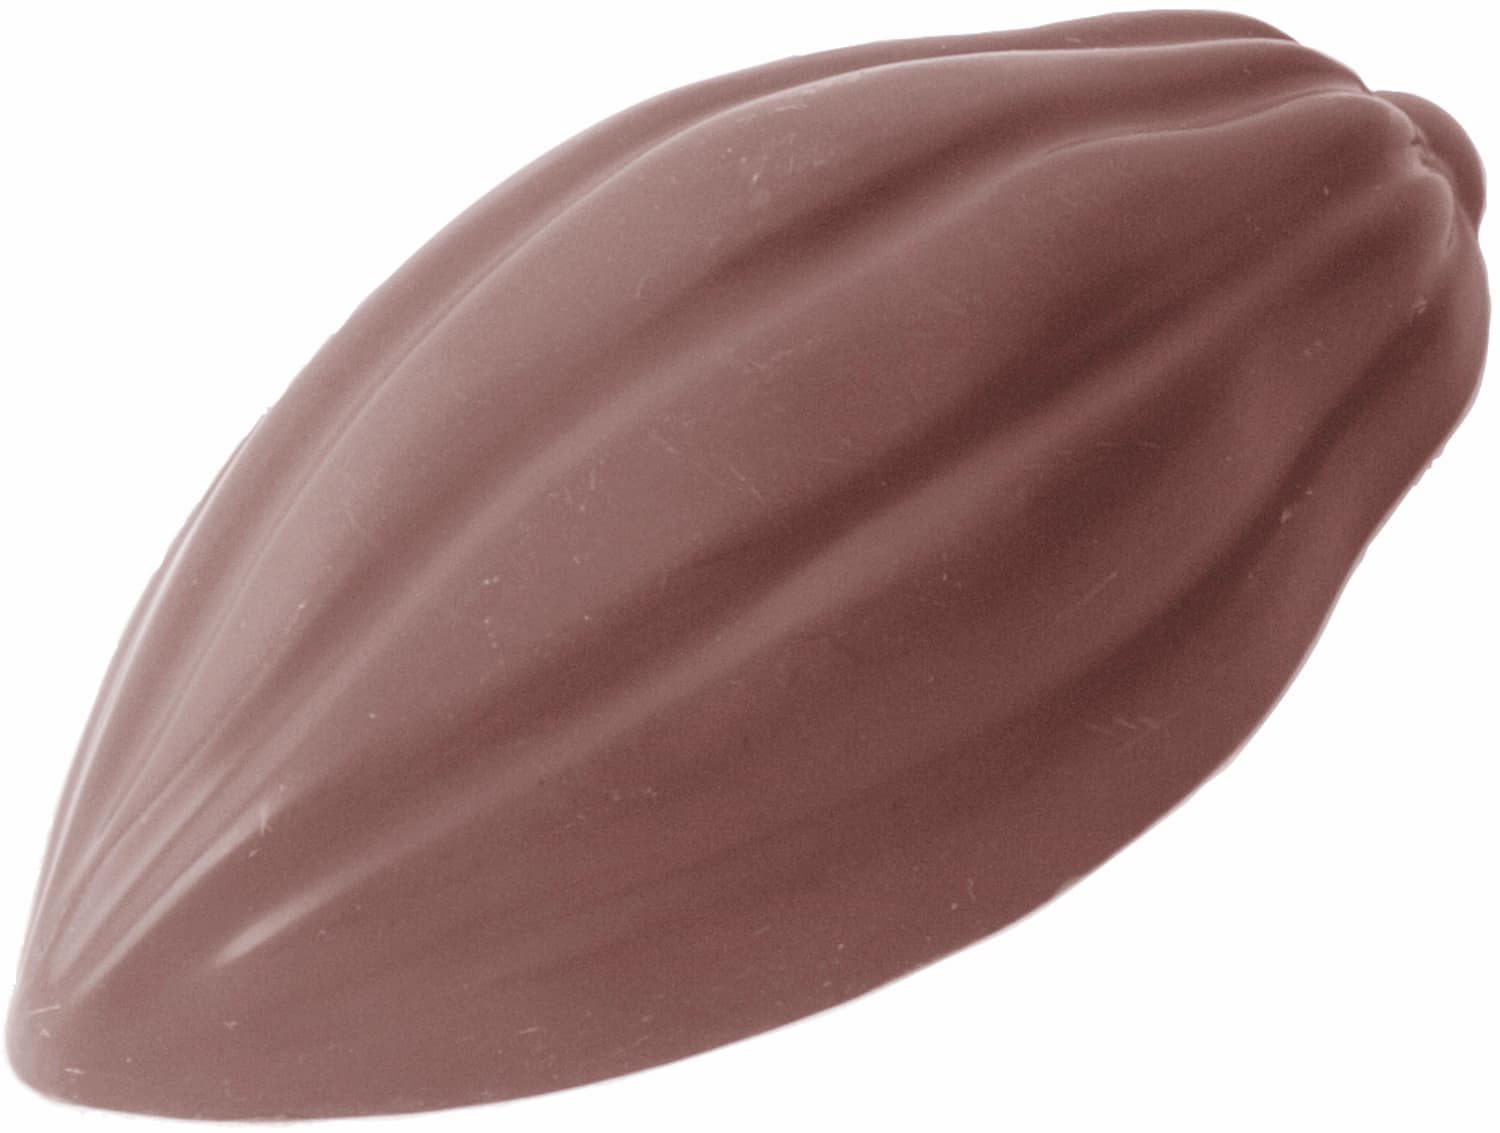 Schokoladenform "Kakaobohne" 421558 421558